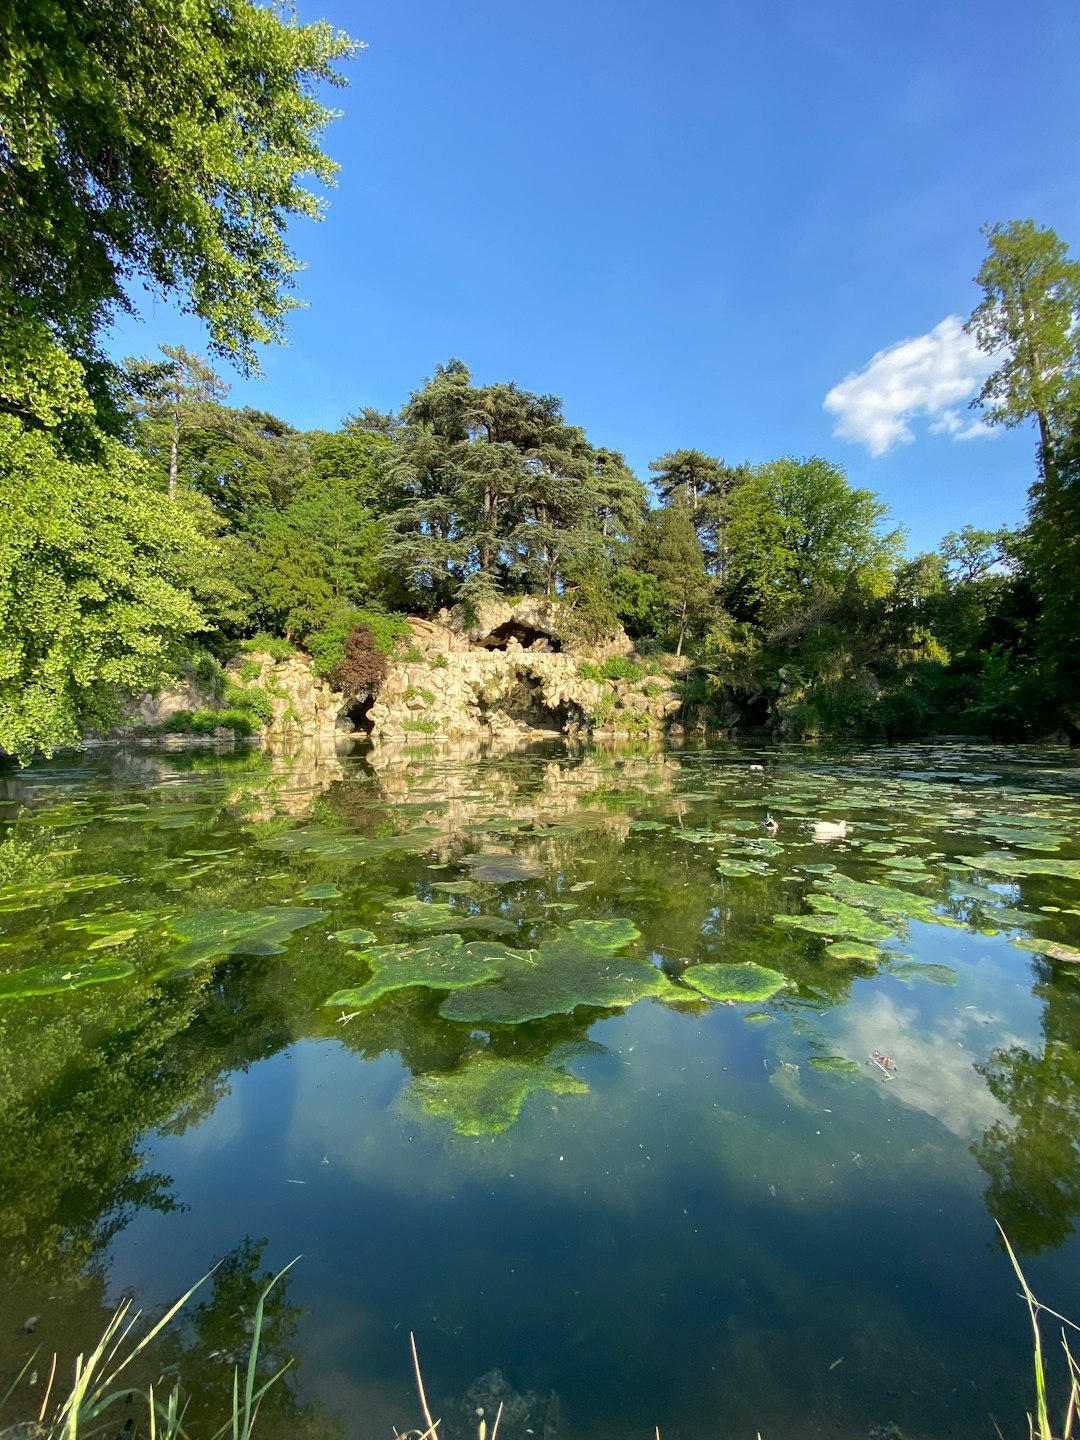 Nature reserve photo spot Bois de Boulogne Guyancourt